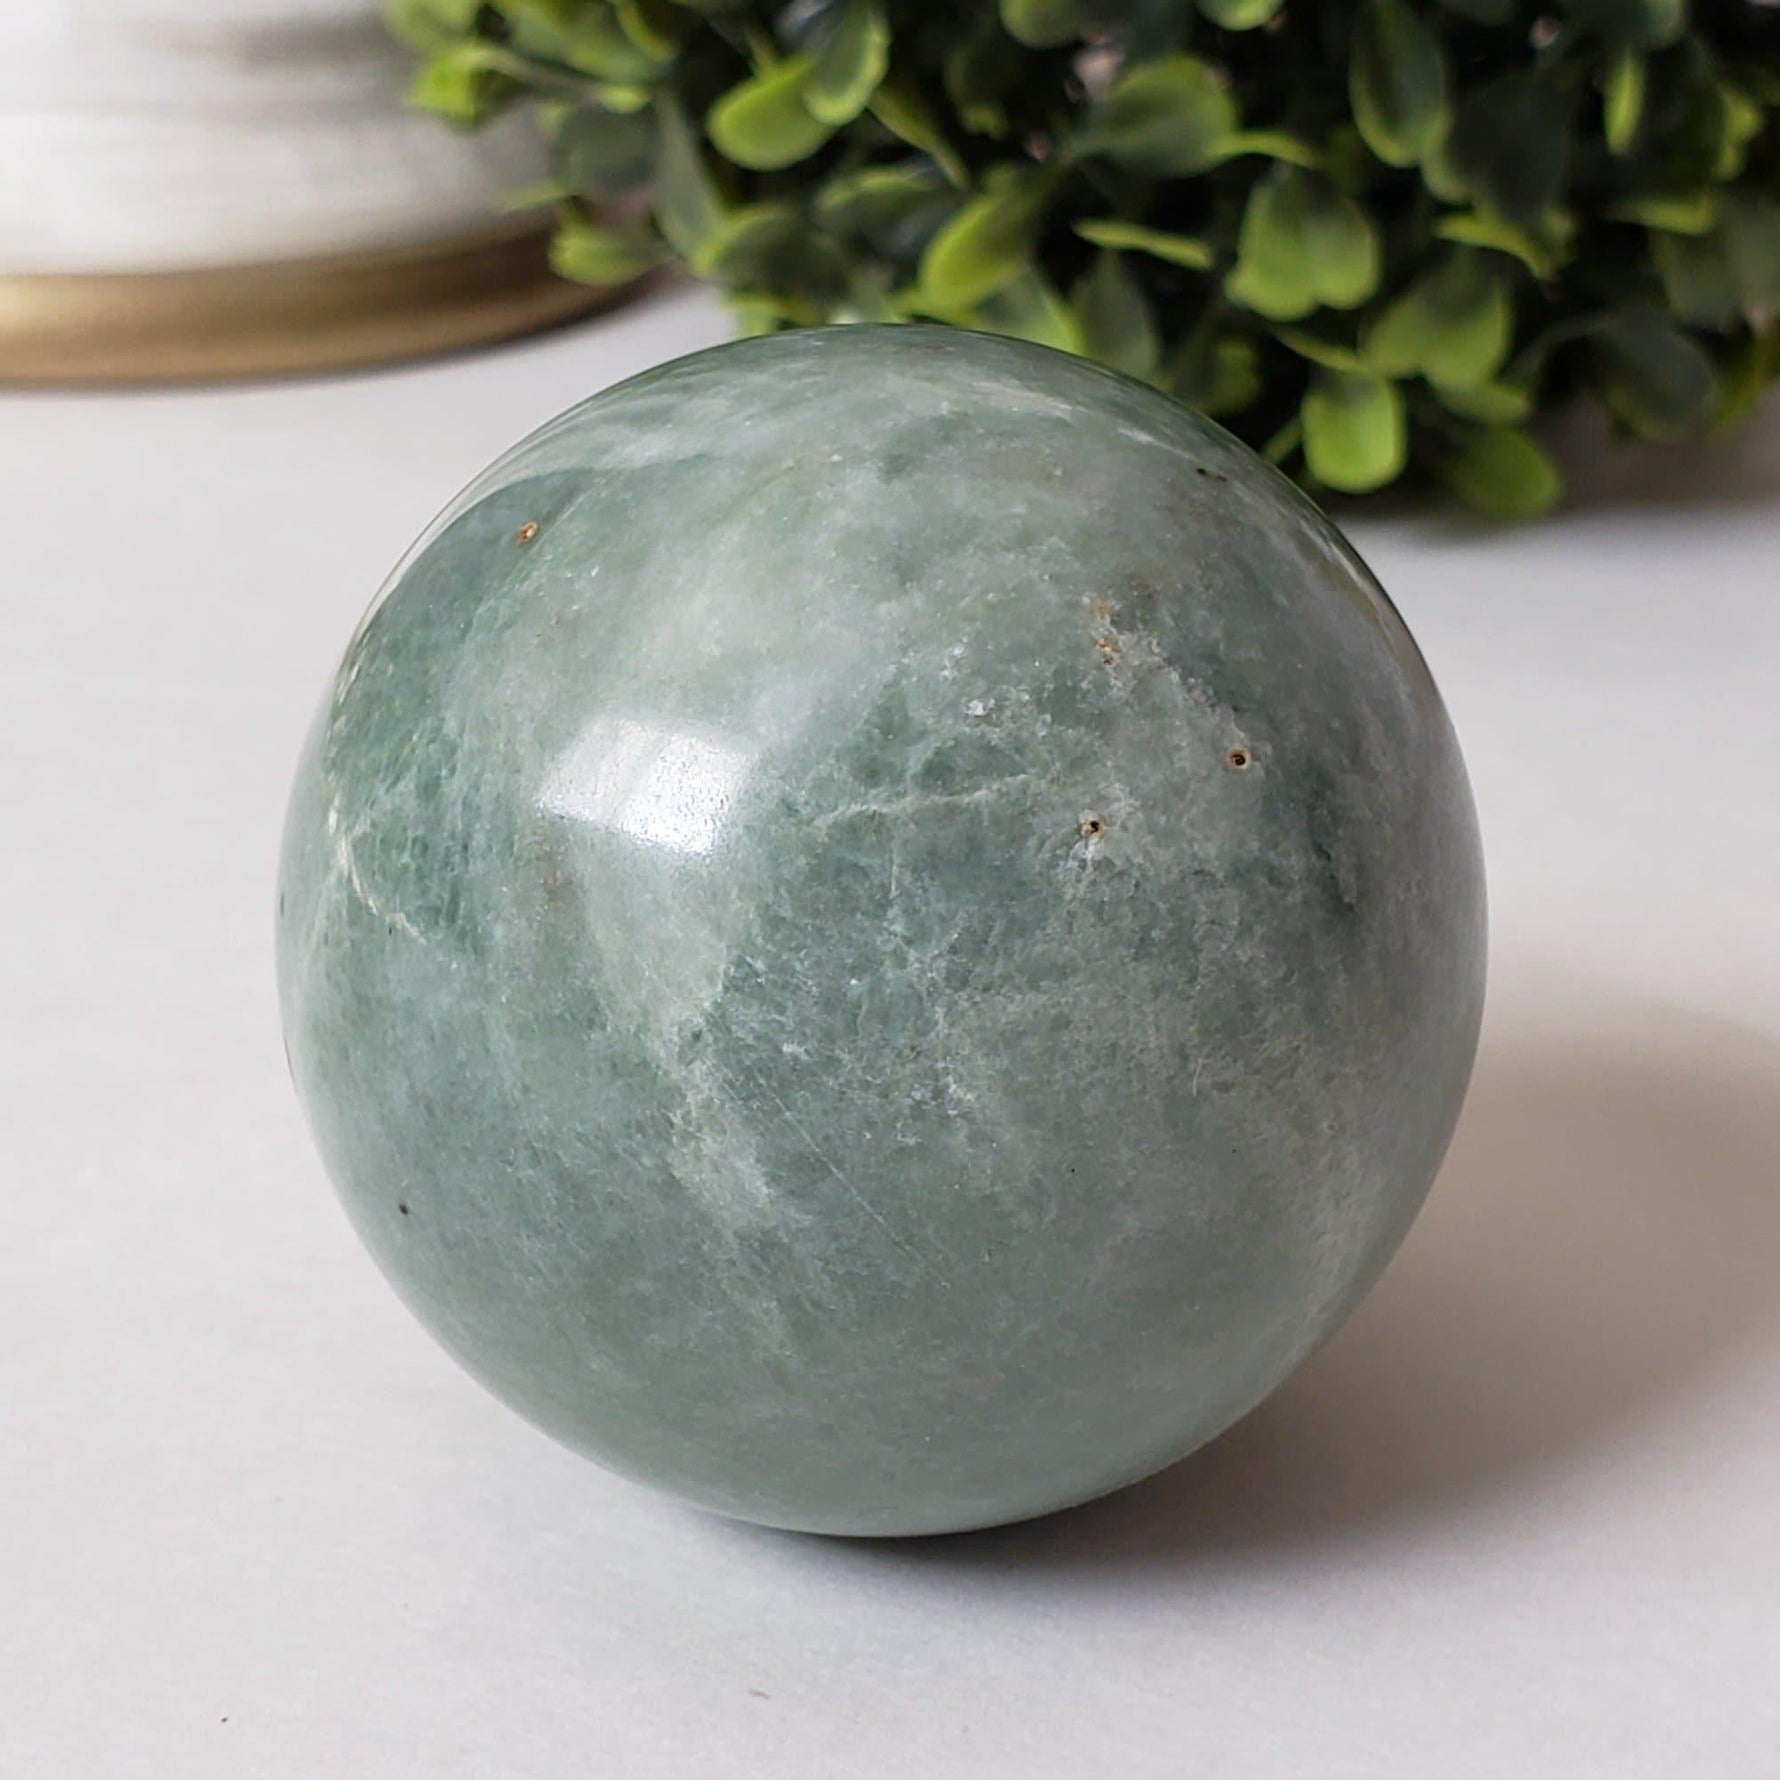 Chinese Jade Sphere | 53 mm, 2.1 in | 217 Grams